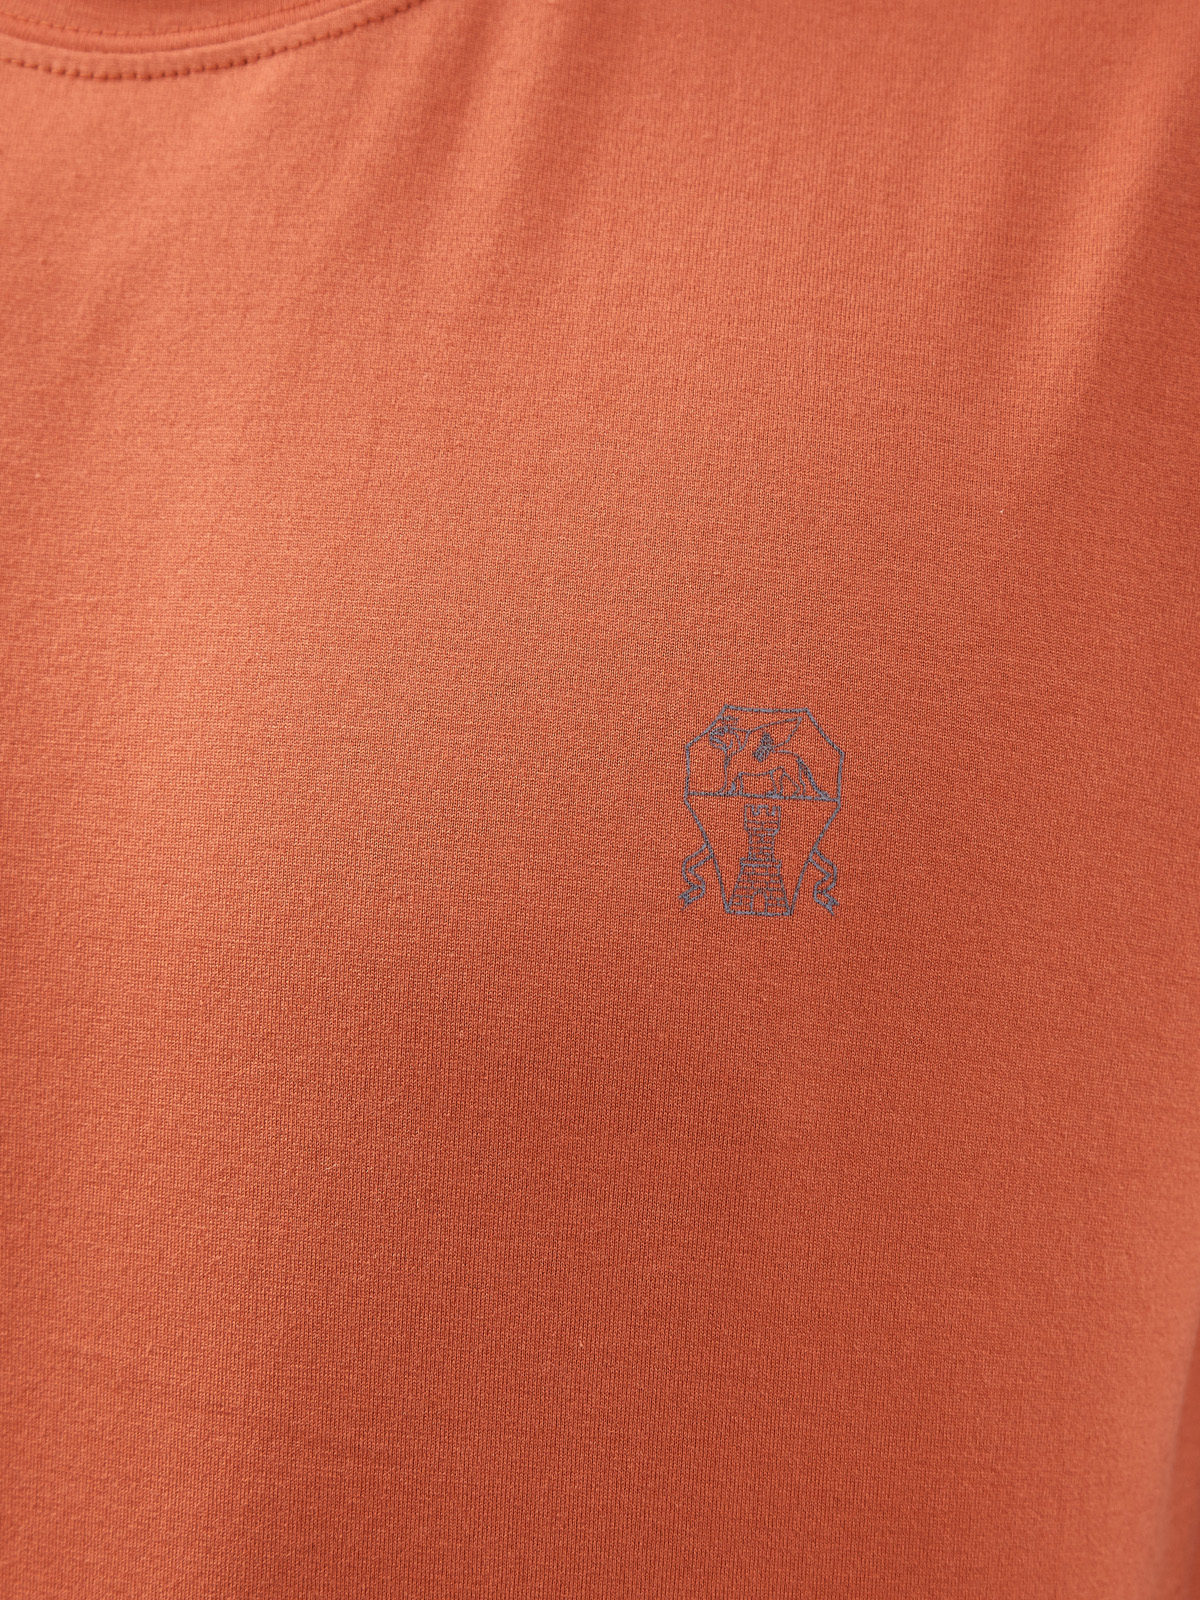 Футболка из дышащего хлопка джерси с логотипом BRUNELLO CUCINELLI, цвет оранжевый, размер 52;54;48 - фото 5